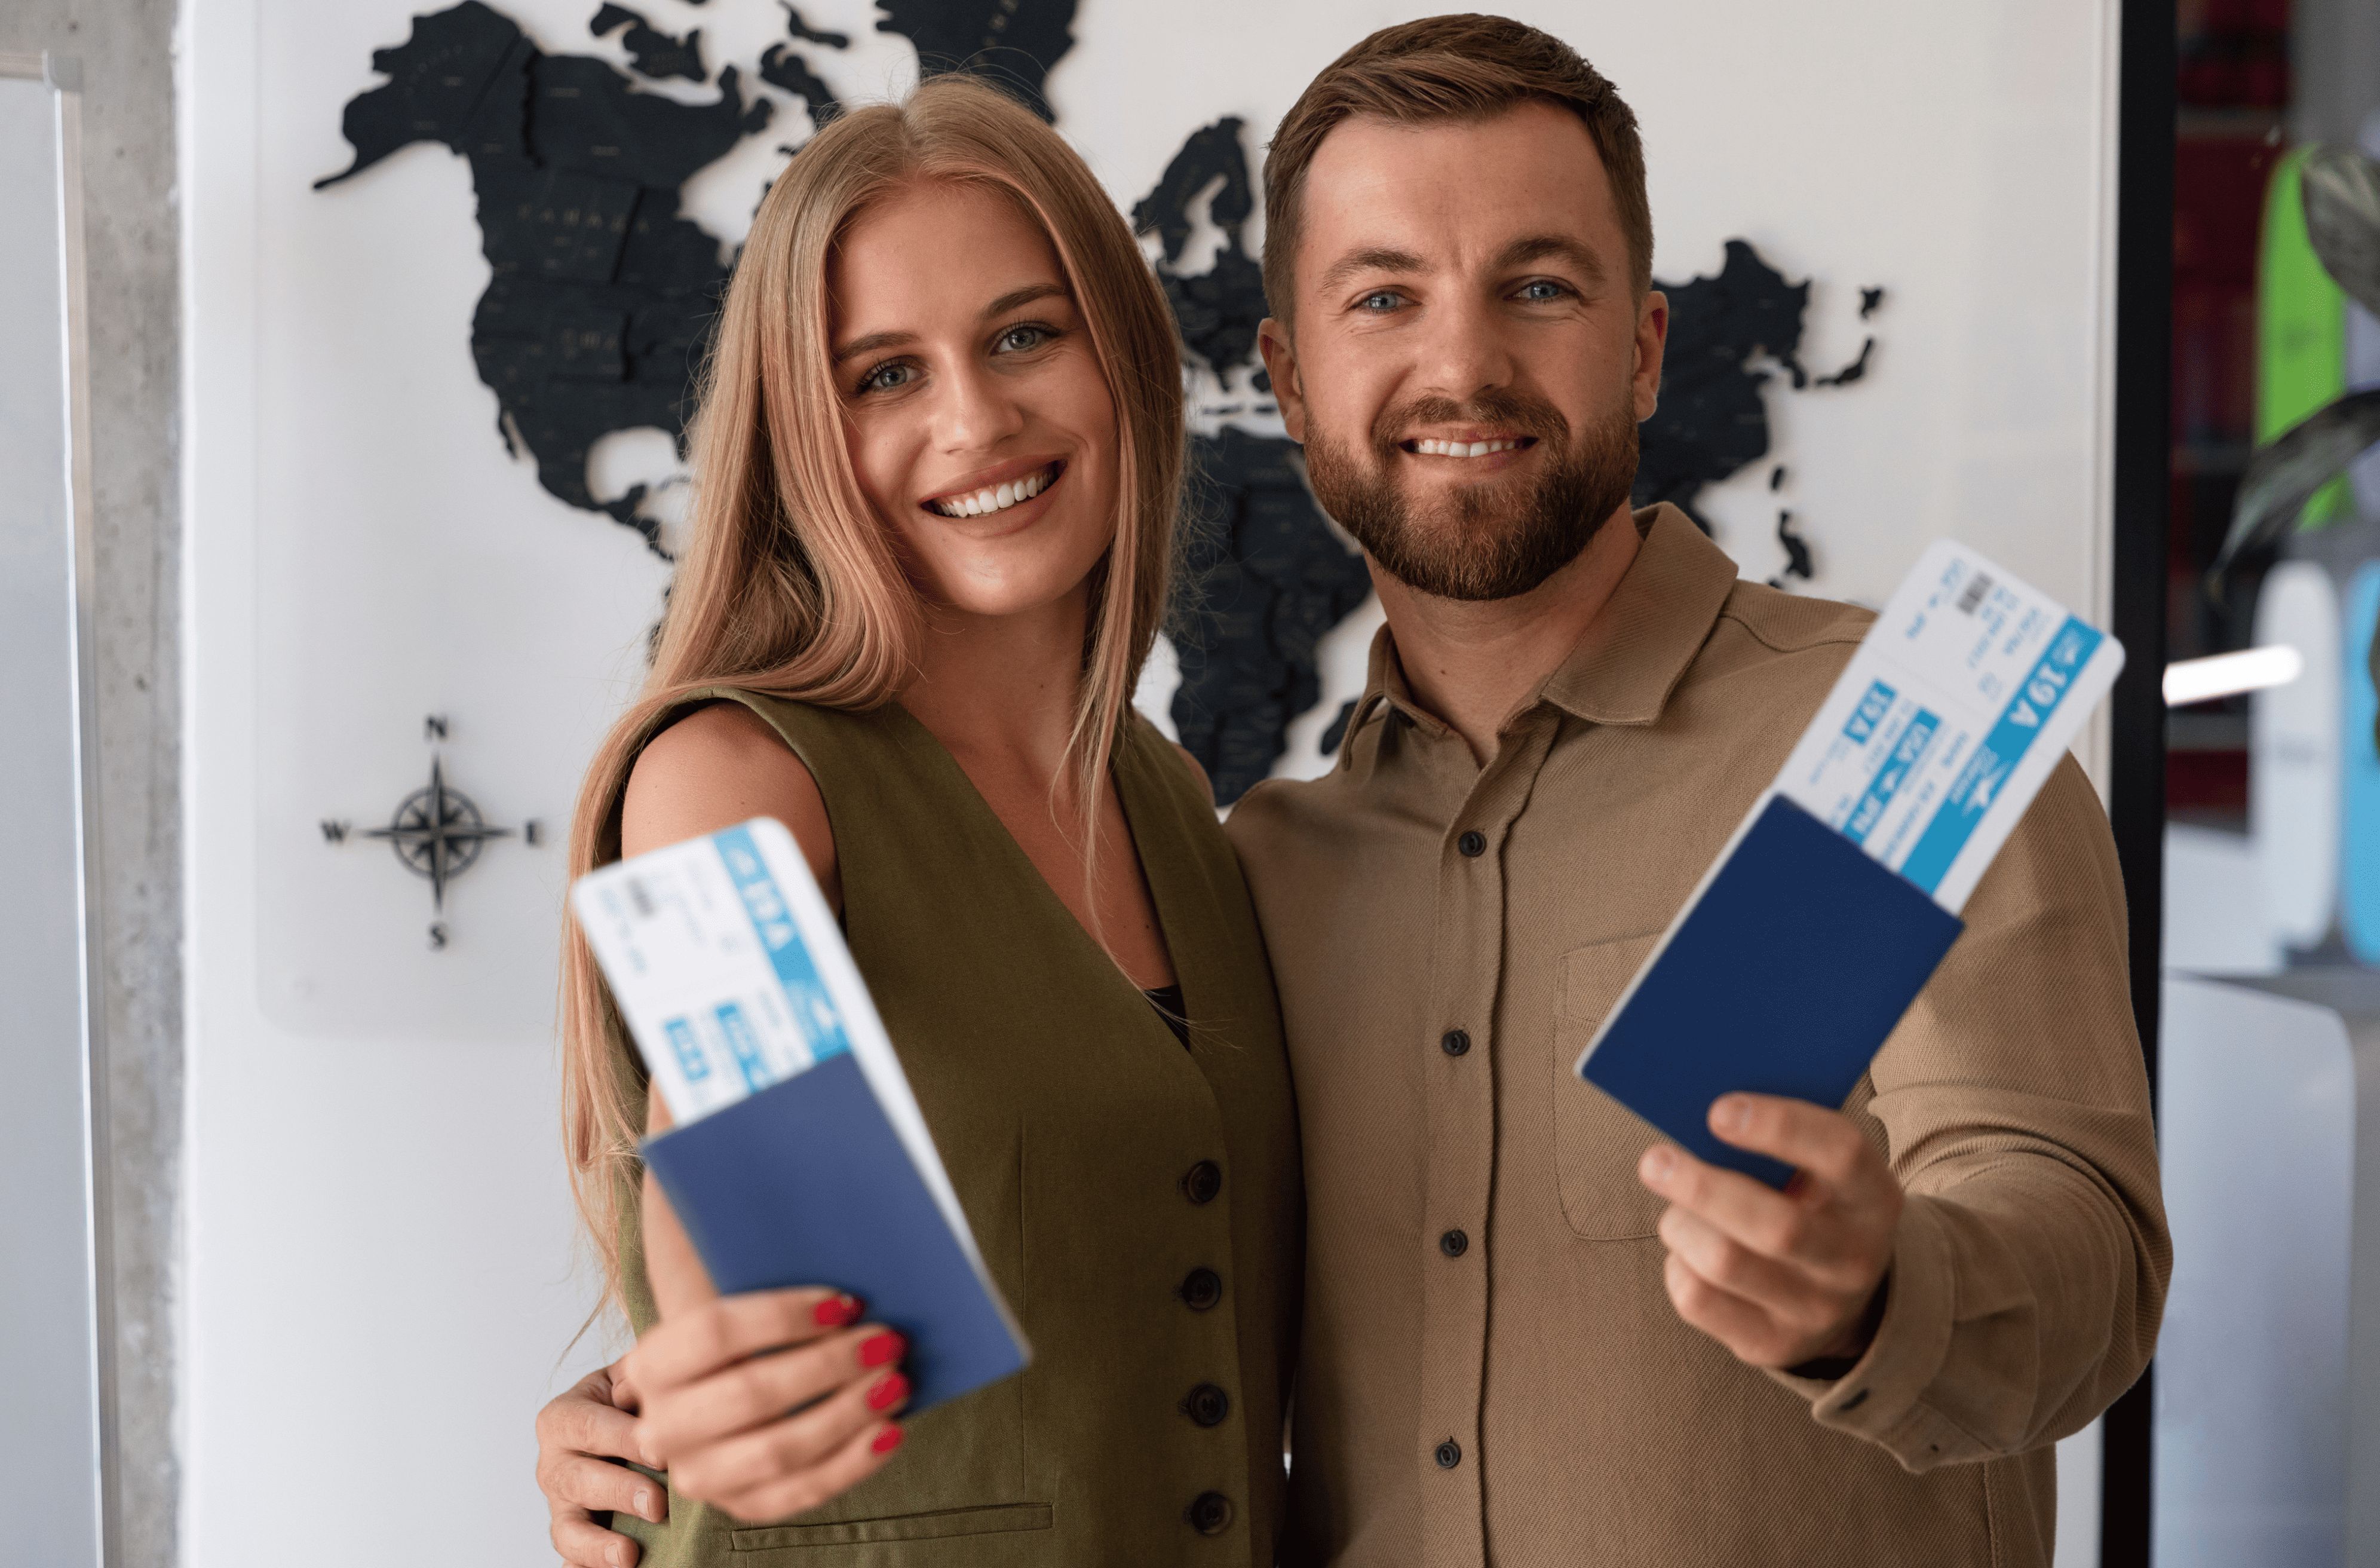 Cuba Tourist Visa for Americans: Facts Versus Fiction